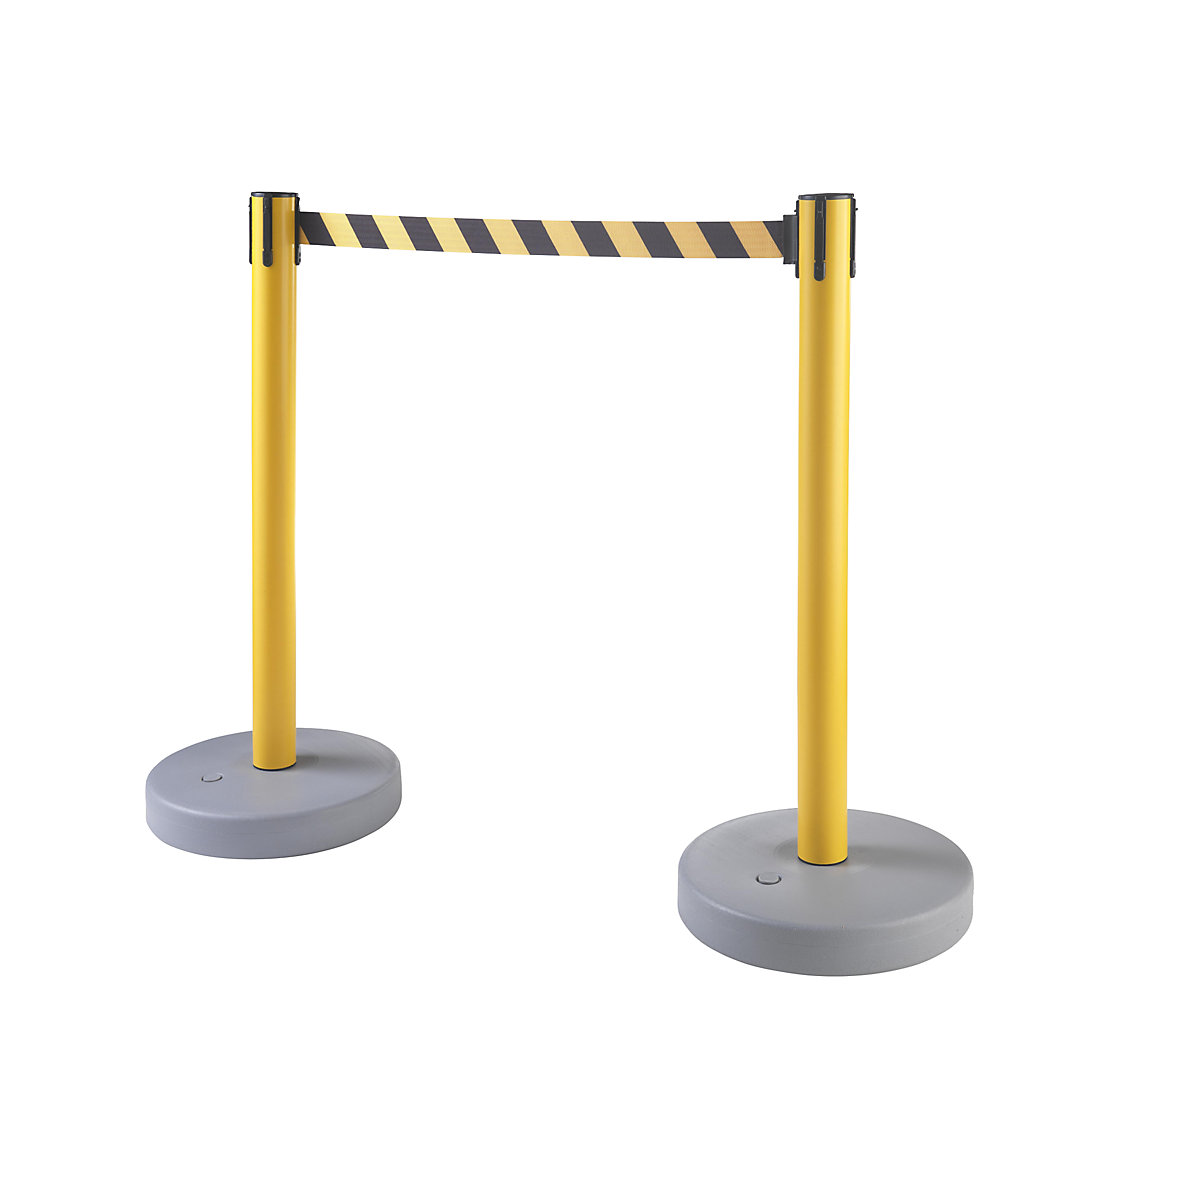 Poste de barreira com cinta, embalagem de 2 unidades, para interior e exterior, extração da cinta 3700 mm, sistema de 4 vias, poste amarelo, cinta amarela / preta-7